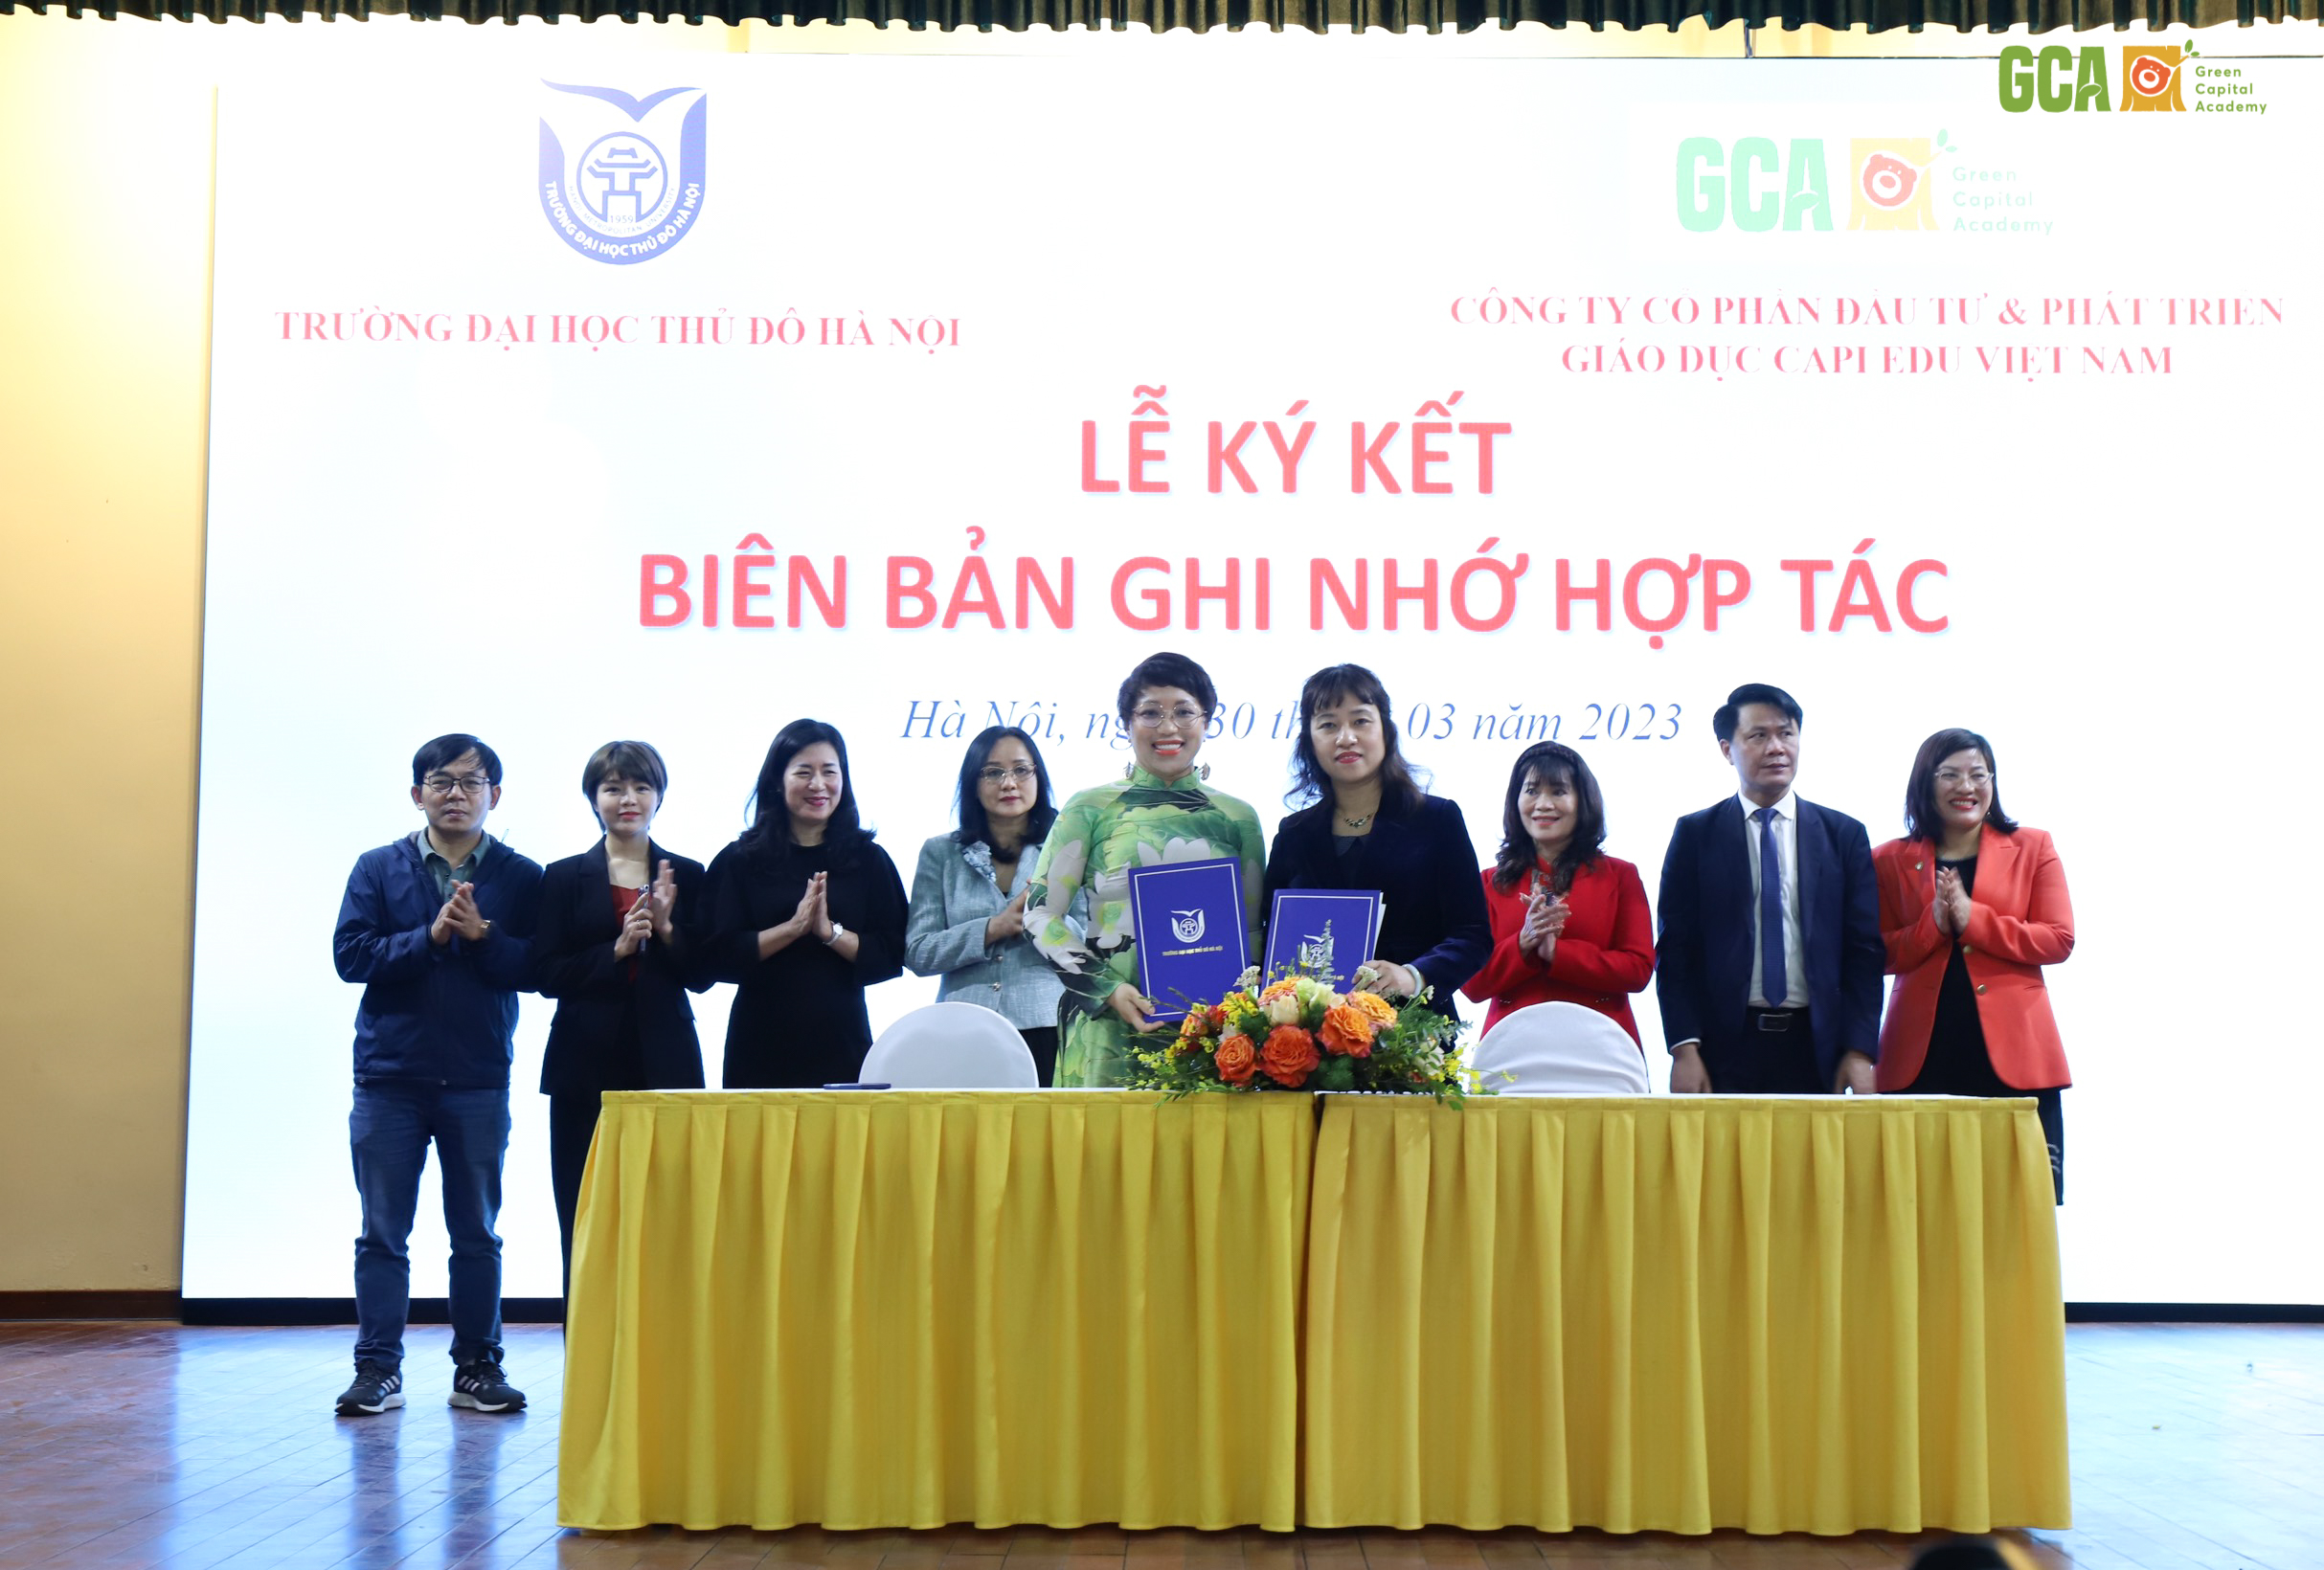 CapiEdu Việt Nam ký kết hợp tác với Trường Đại học Thủ Đô Hà Nội